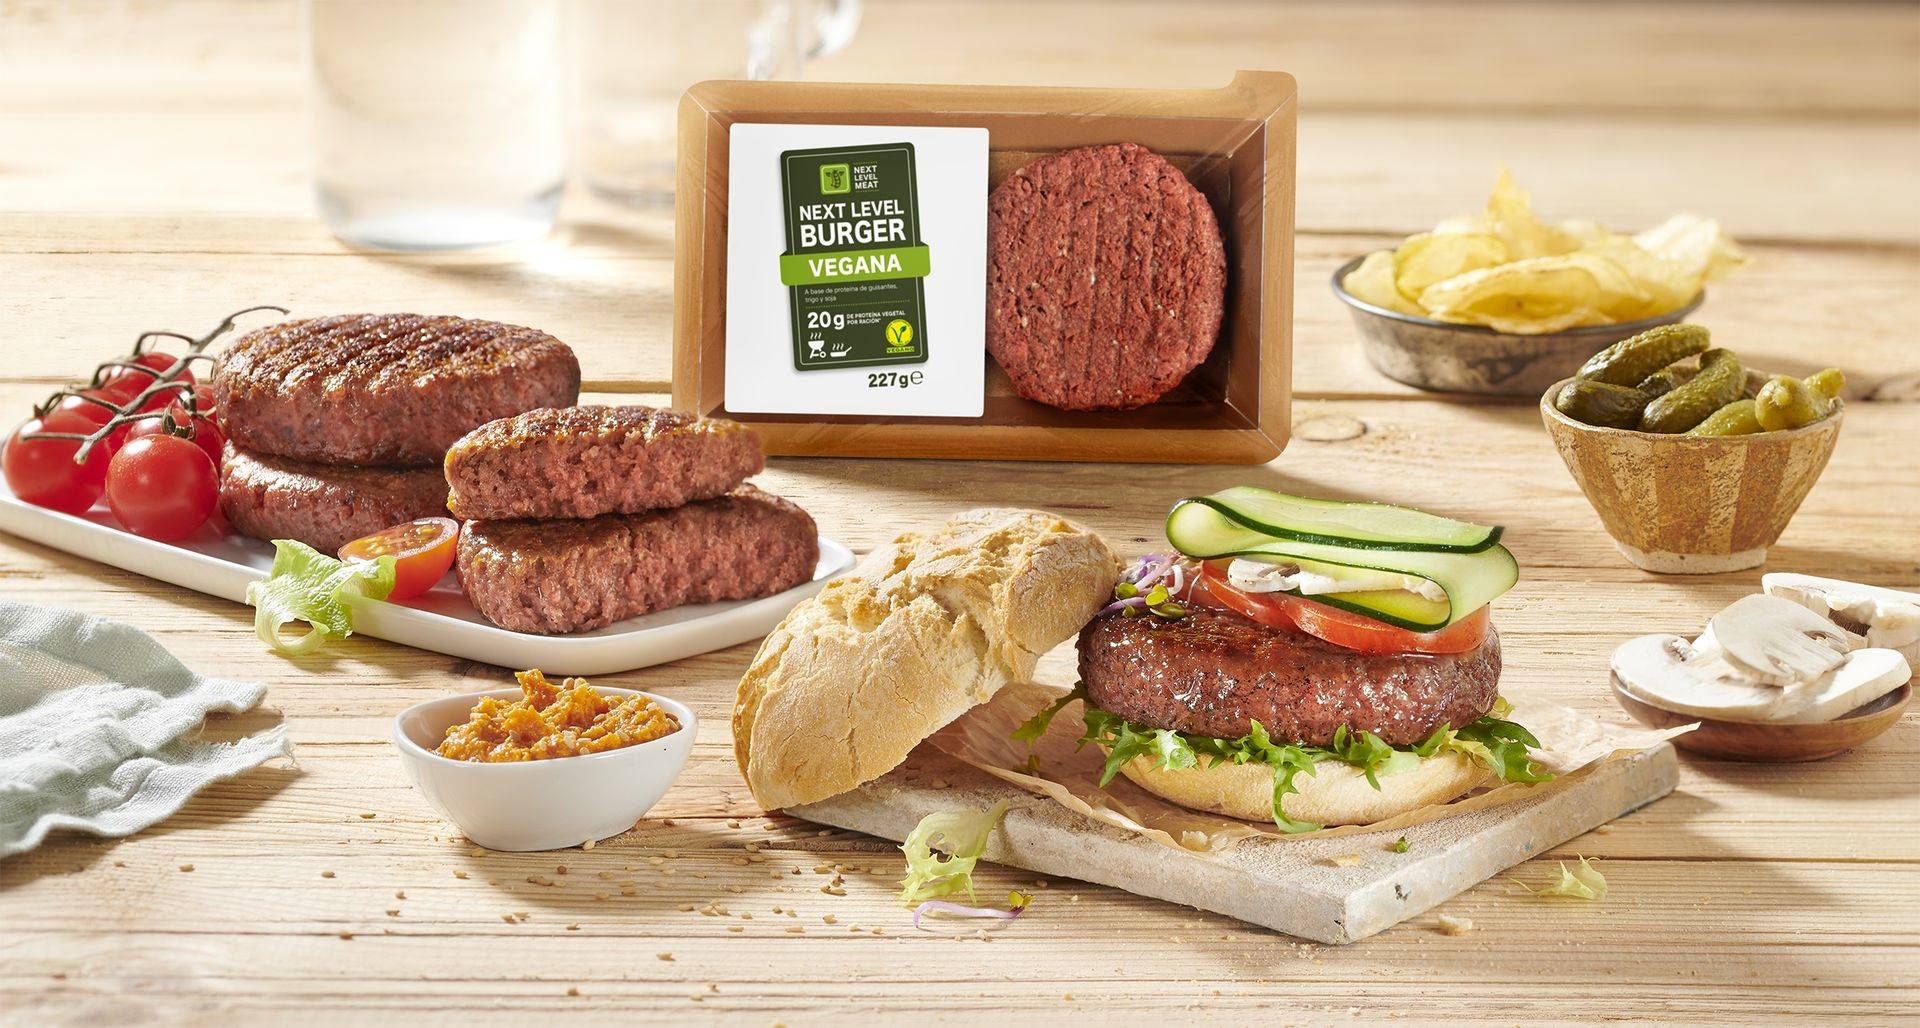 Hamburguesa vegana de Lidl arrasa y supera diez veces las ventas previstas 